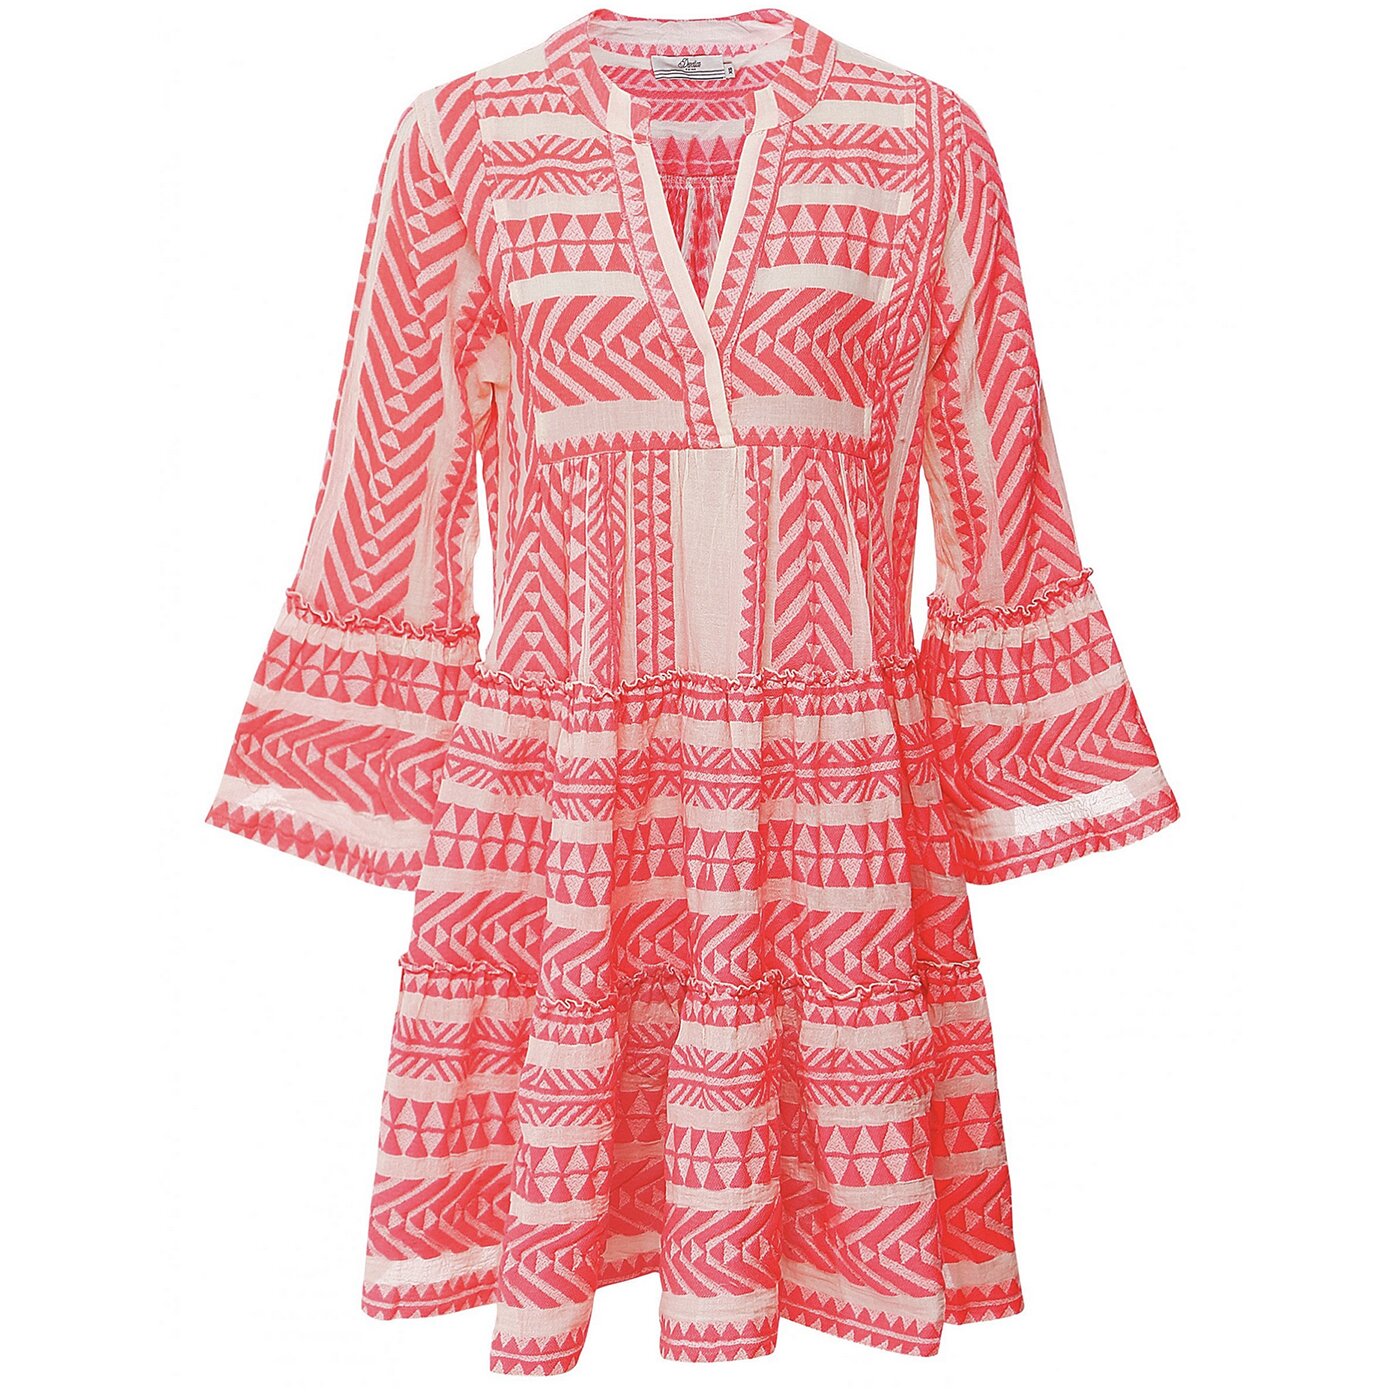 Typisch Okkernoot Ophef Devotion Ella Short Dress Pink Off White 022545G - Fashion for Kids & Teens